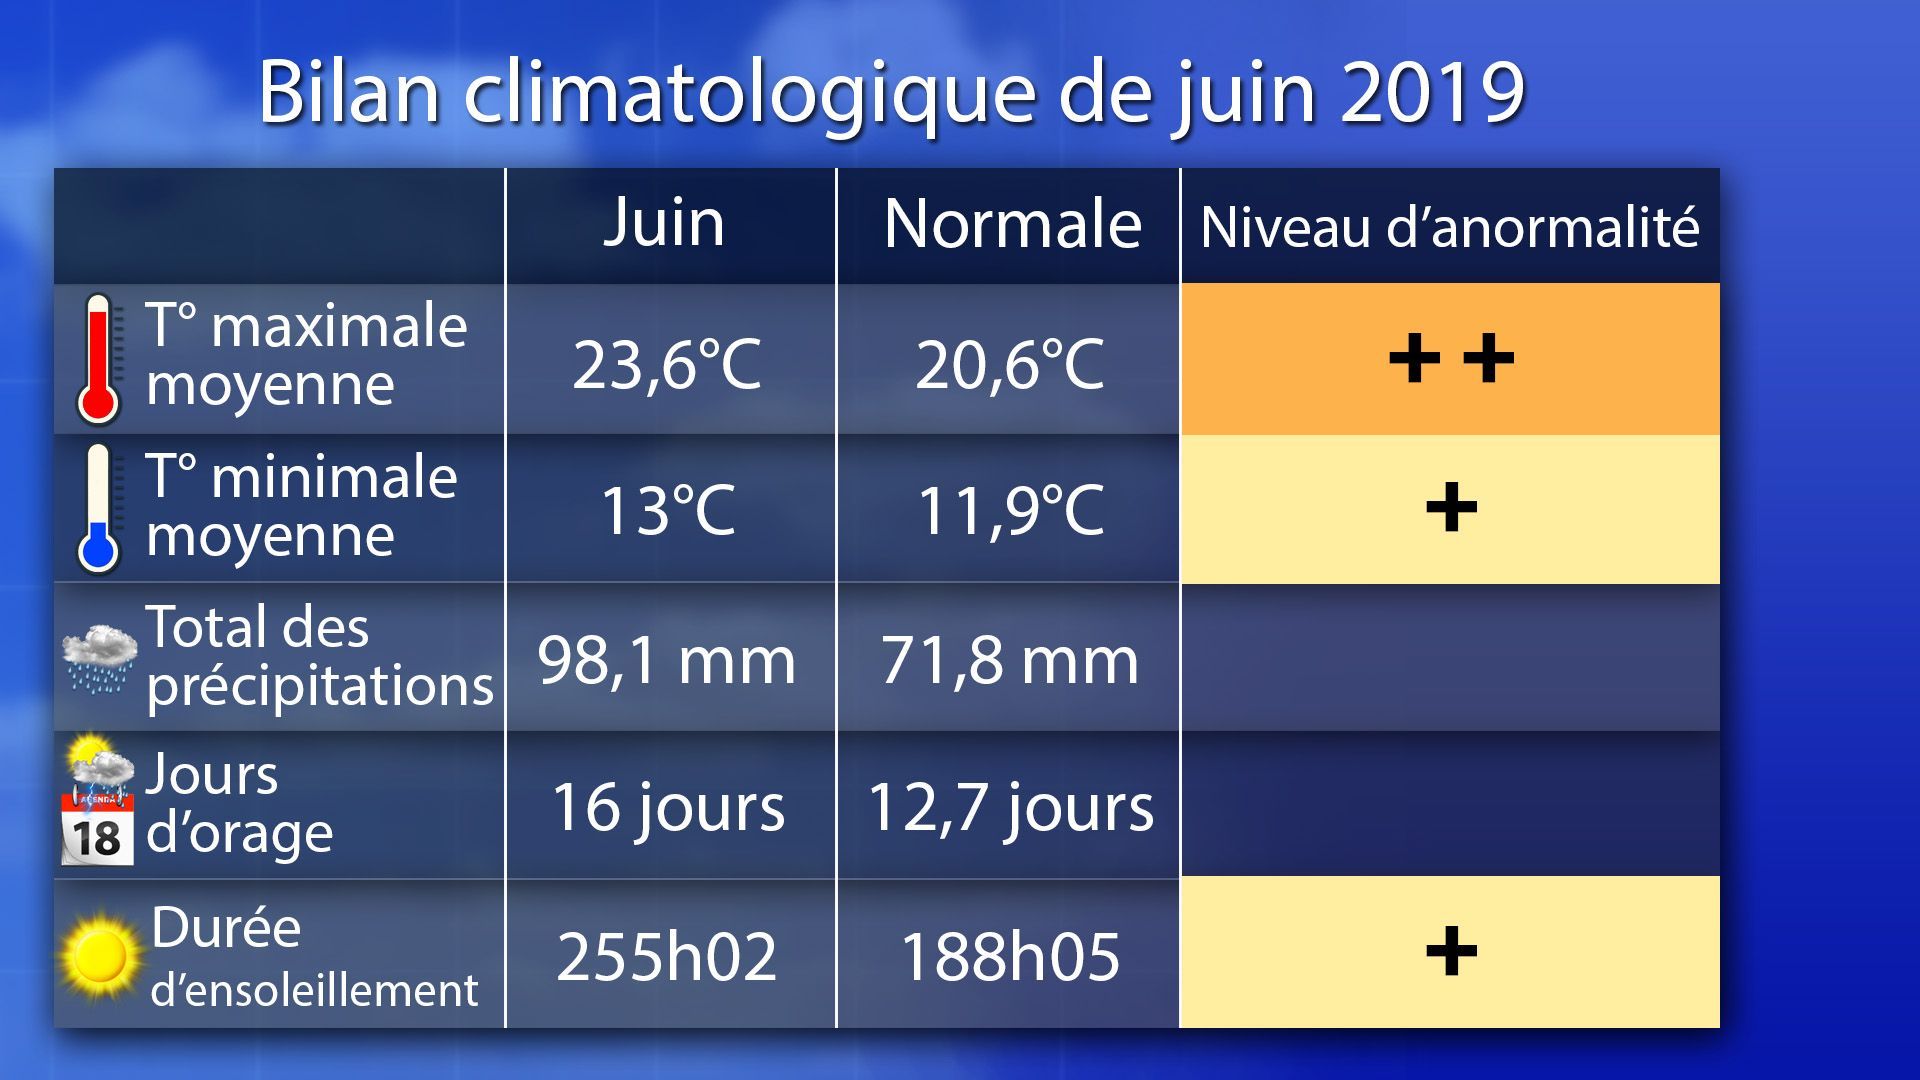 Bilan climatologique de juin 2019 : un mois très chaud et ensoleillé